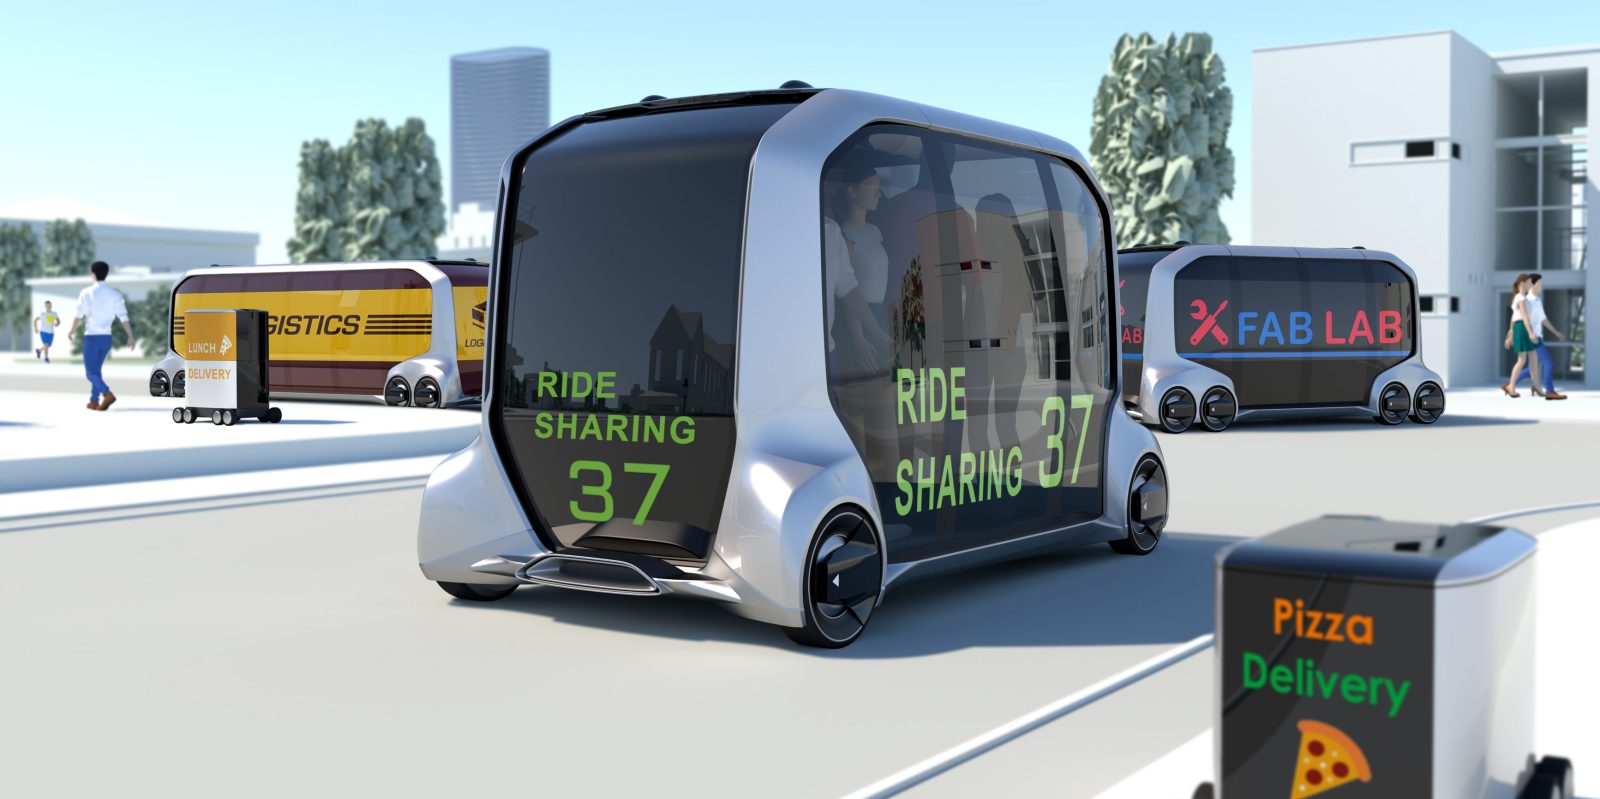 Toyota unveils new batteryelectric autonomous vehicle concept